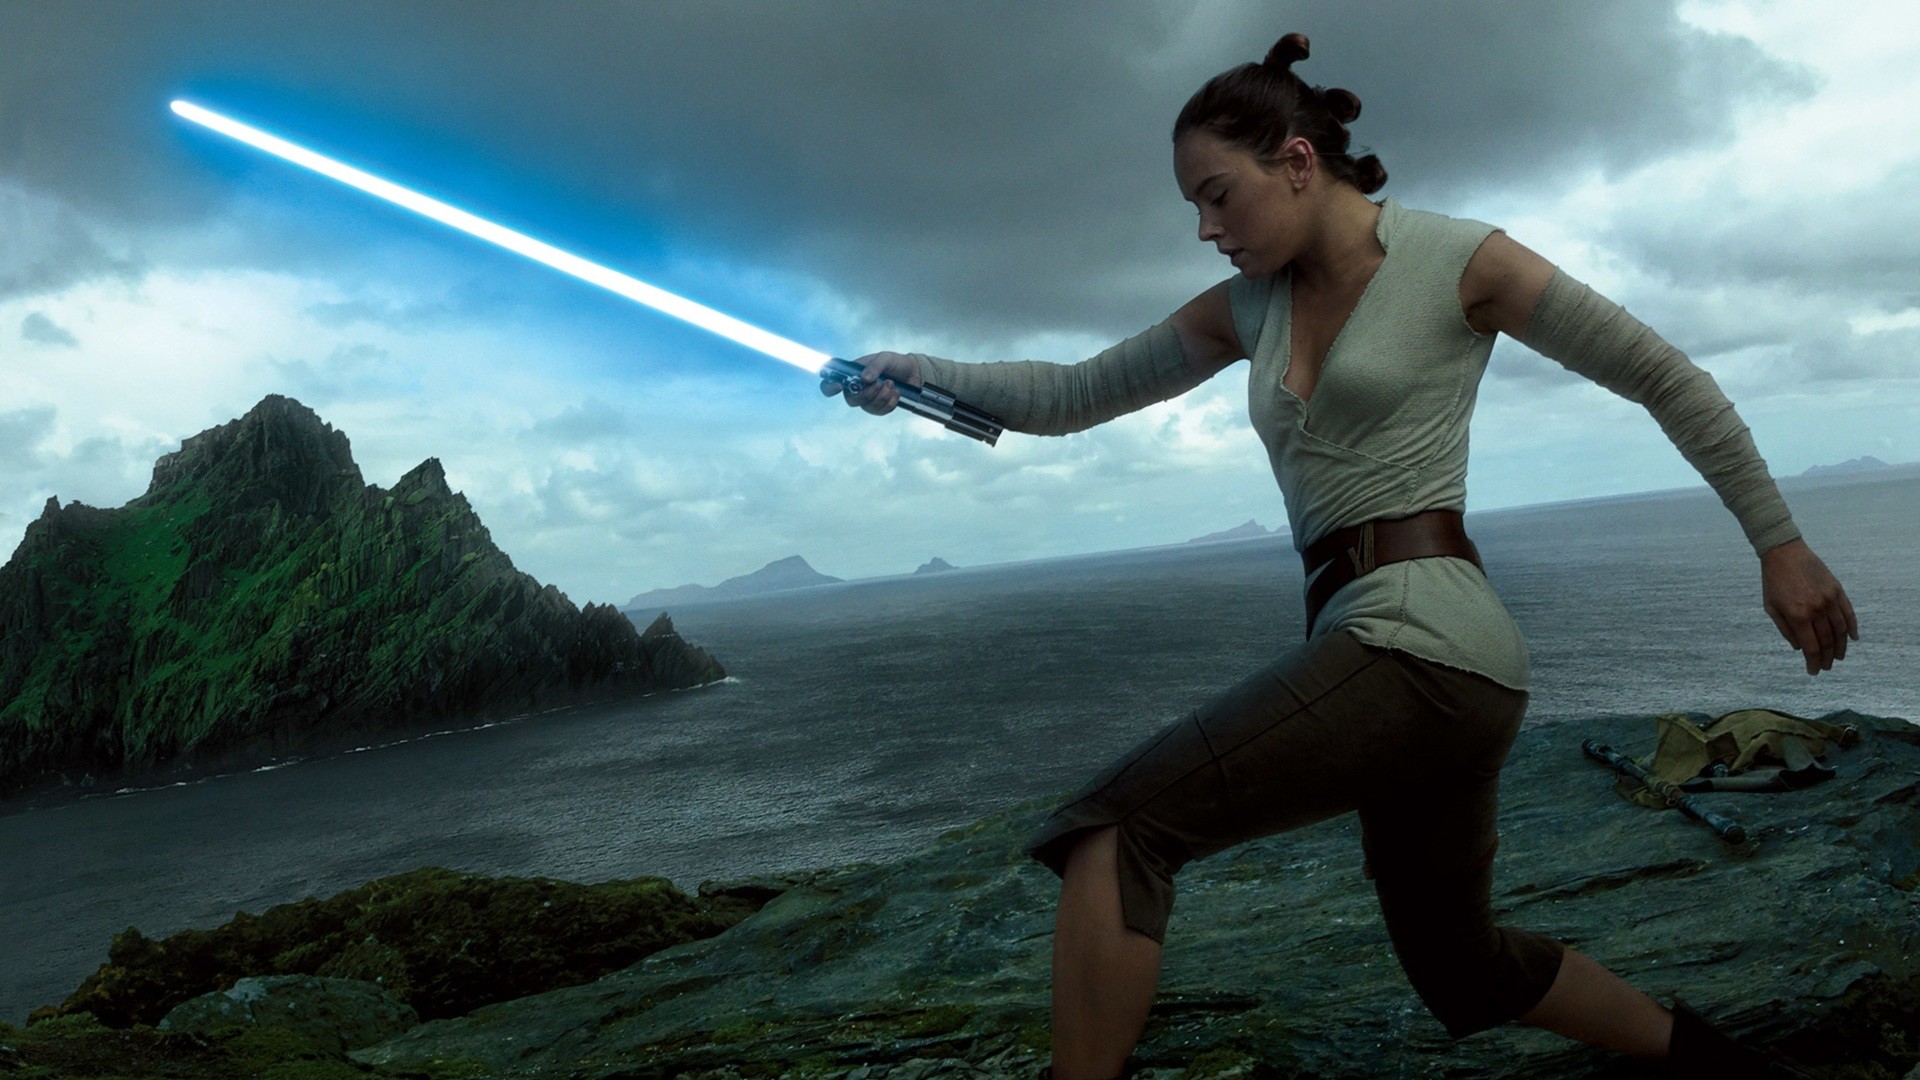 Full Hd, Hdtv, Fhd, 1080p - Daisy Ridley Rise Of Skywalker - HD Wallpaper 